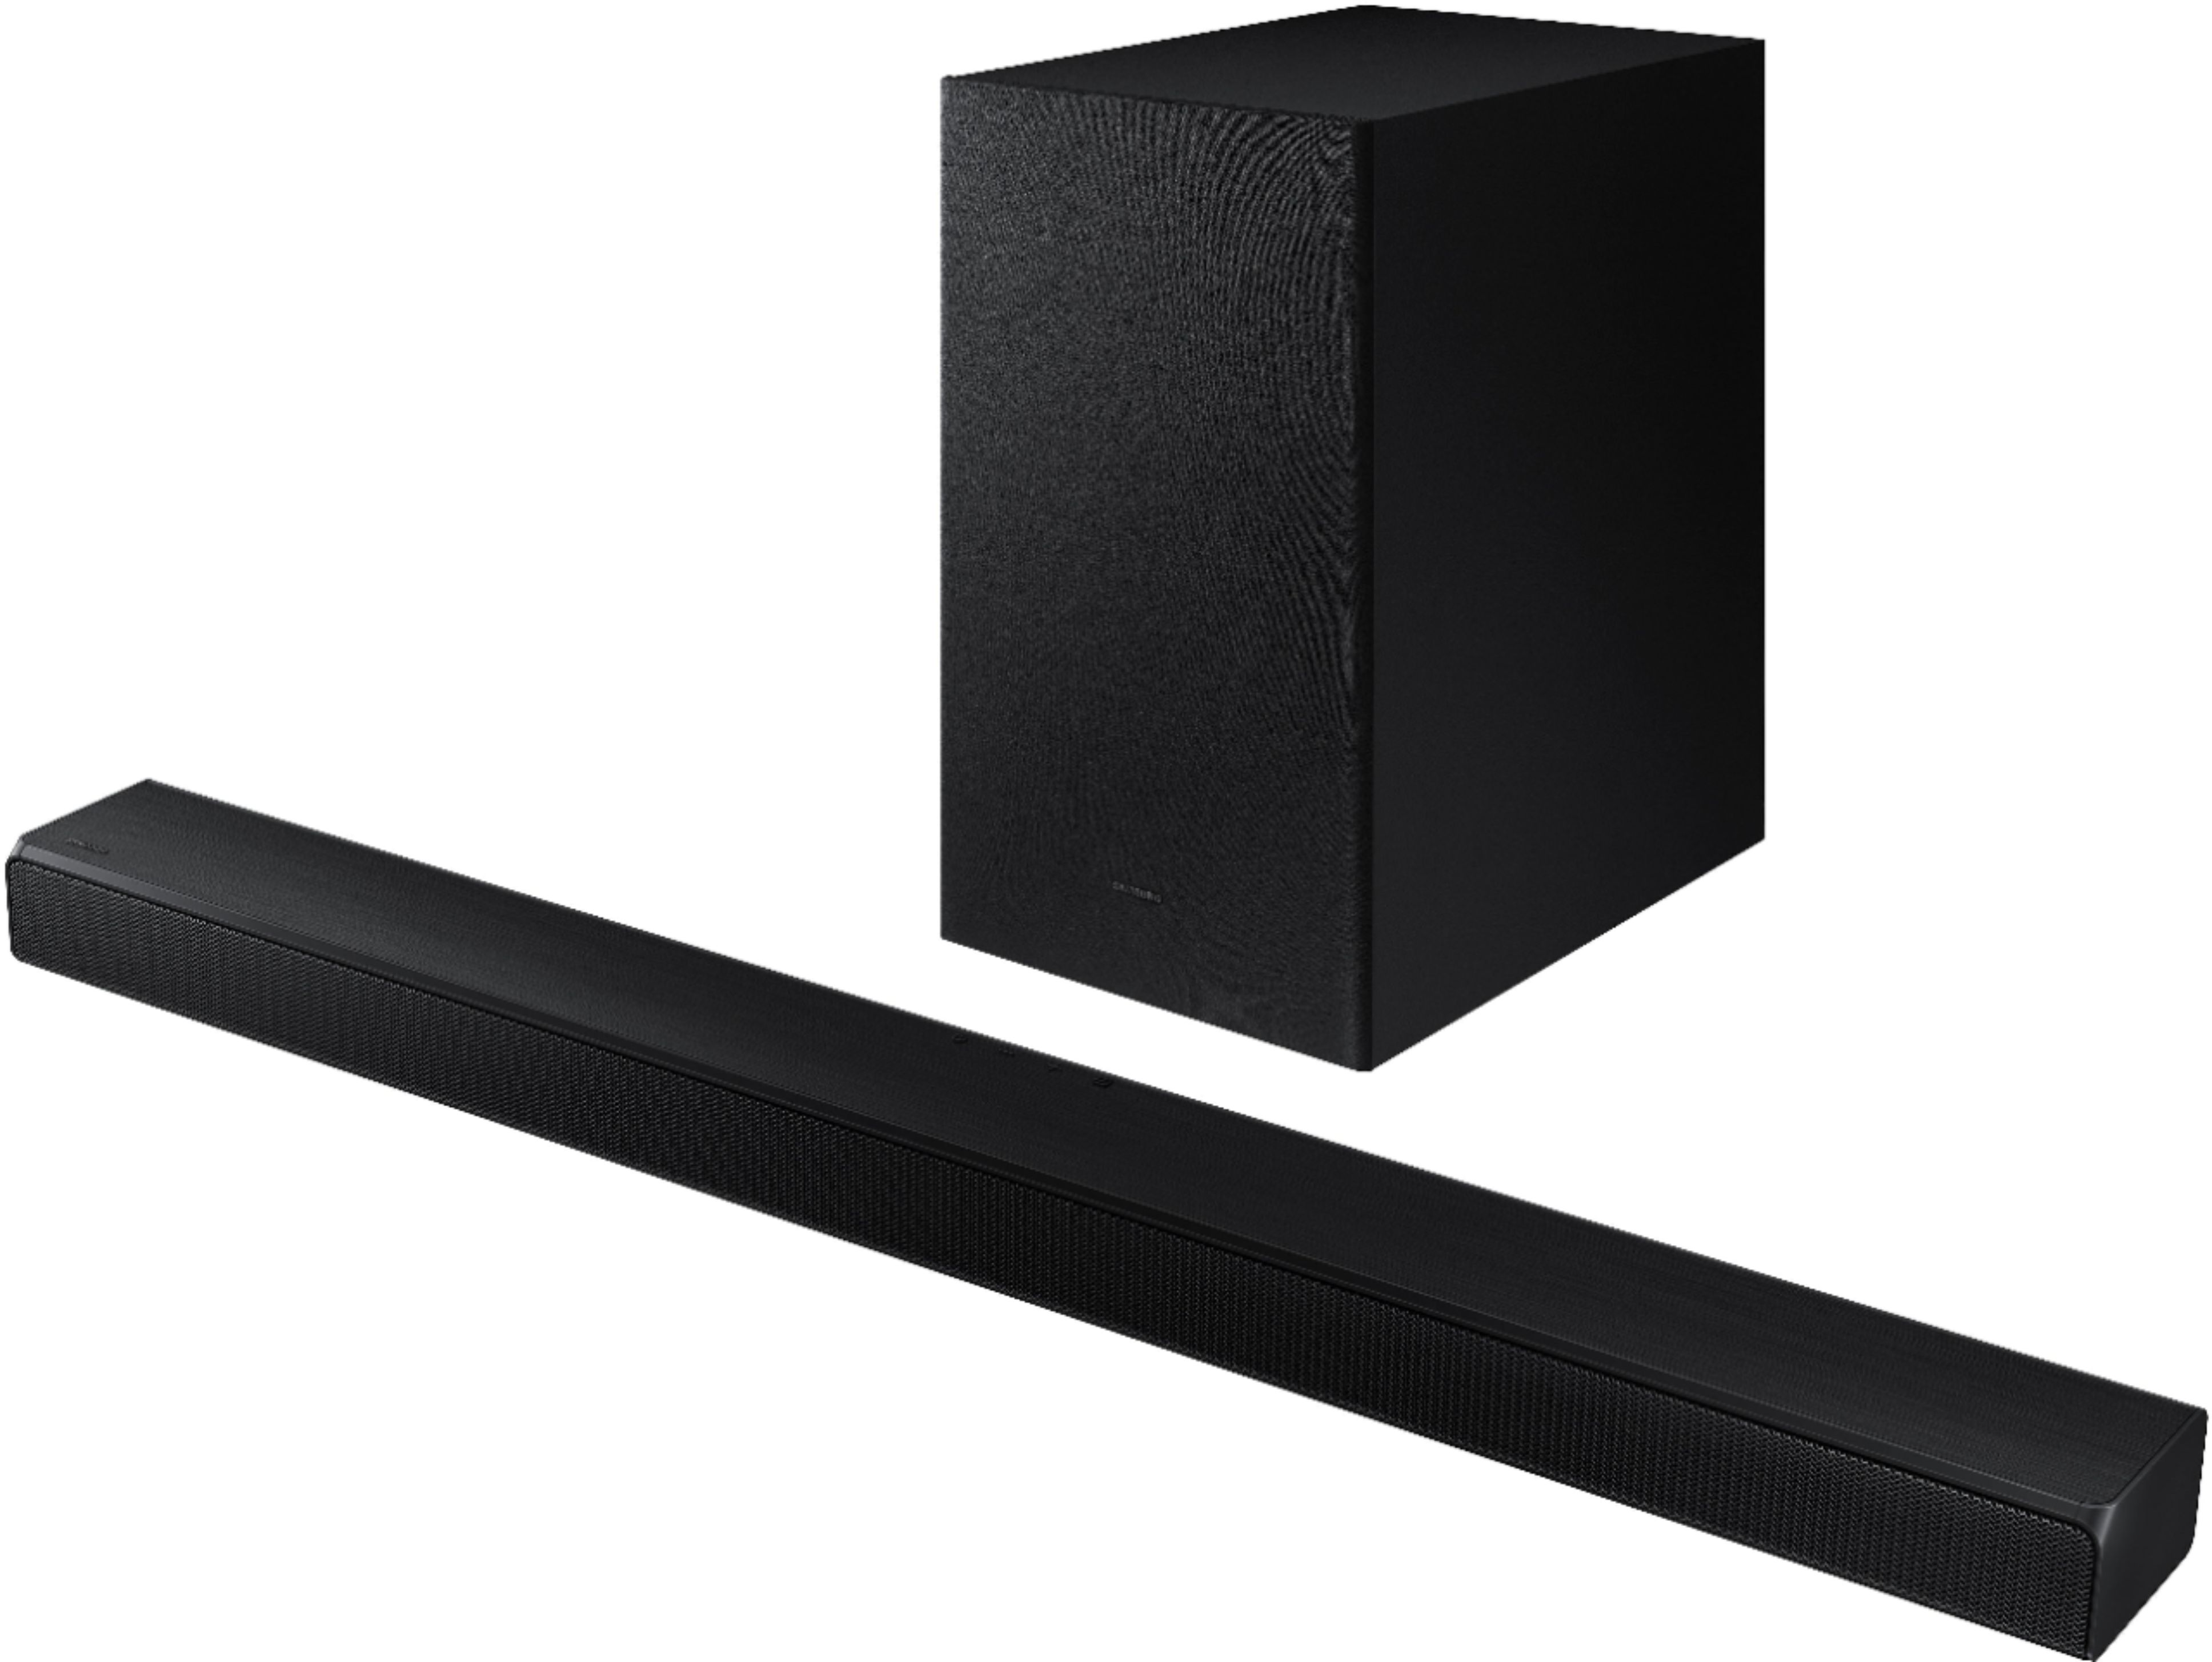 Best Buy: Samsung HW-A550 2.1ch Sound bar with Dolby 5.1 Black HW